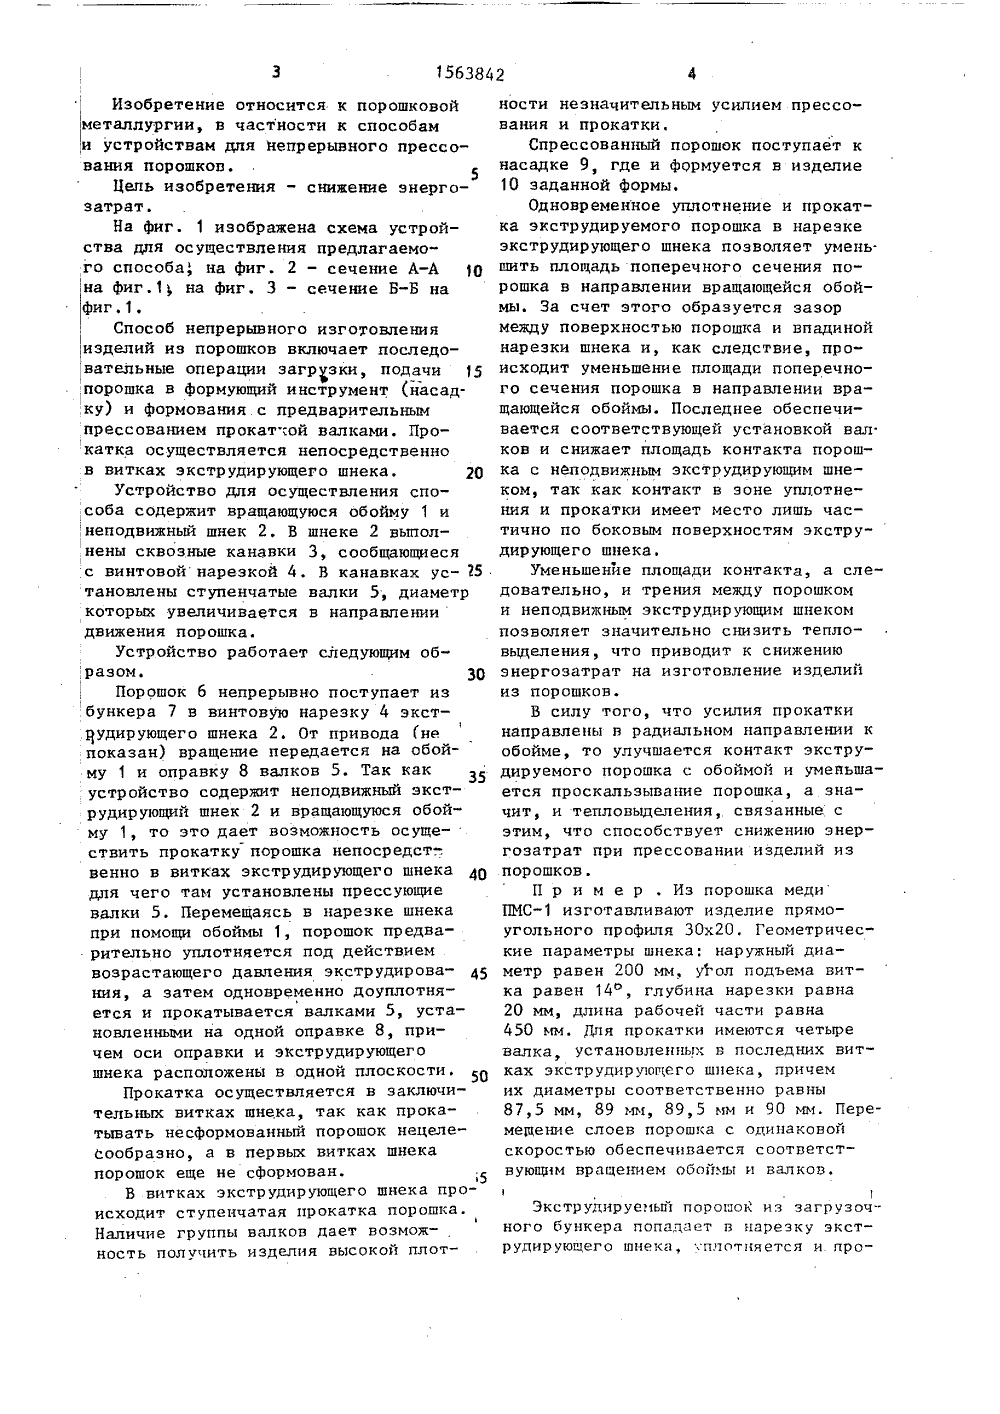 Способ изготовления пустотелых ювелирных изделий. советский патент 1993 года su 1813026 a3. изобретение по мкп b22d25/02 .